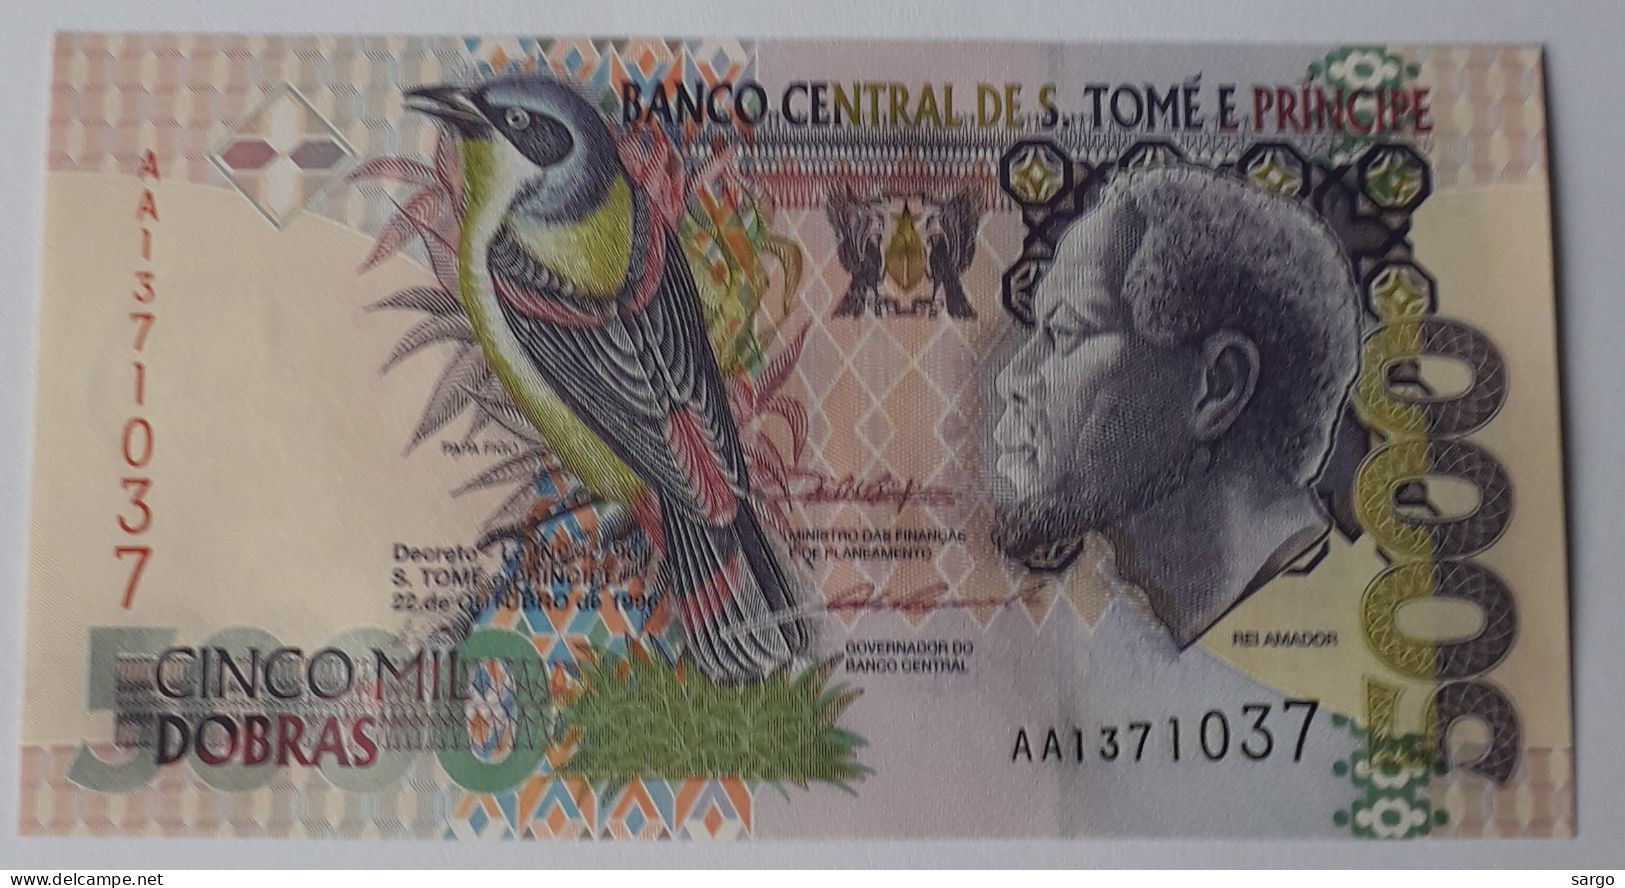 SAINT THOMAS AND PRINCIPE  - 5.000 DOLLARS - P 65  (1996) - UNC -  BANKNOTES - PAPER MONEY - San Tomé E Principe